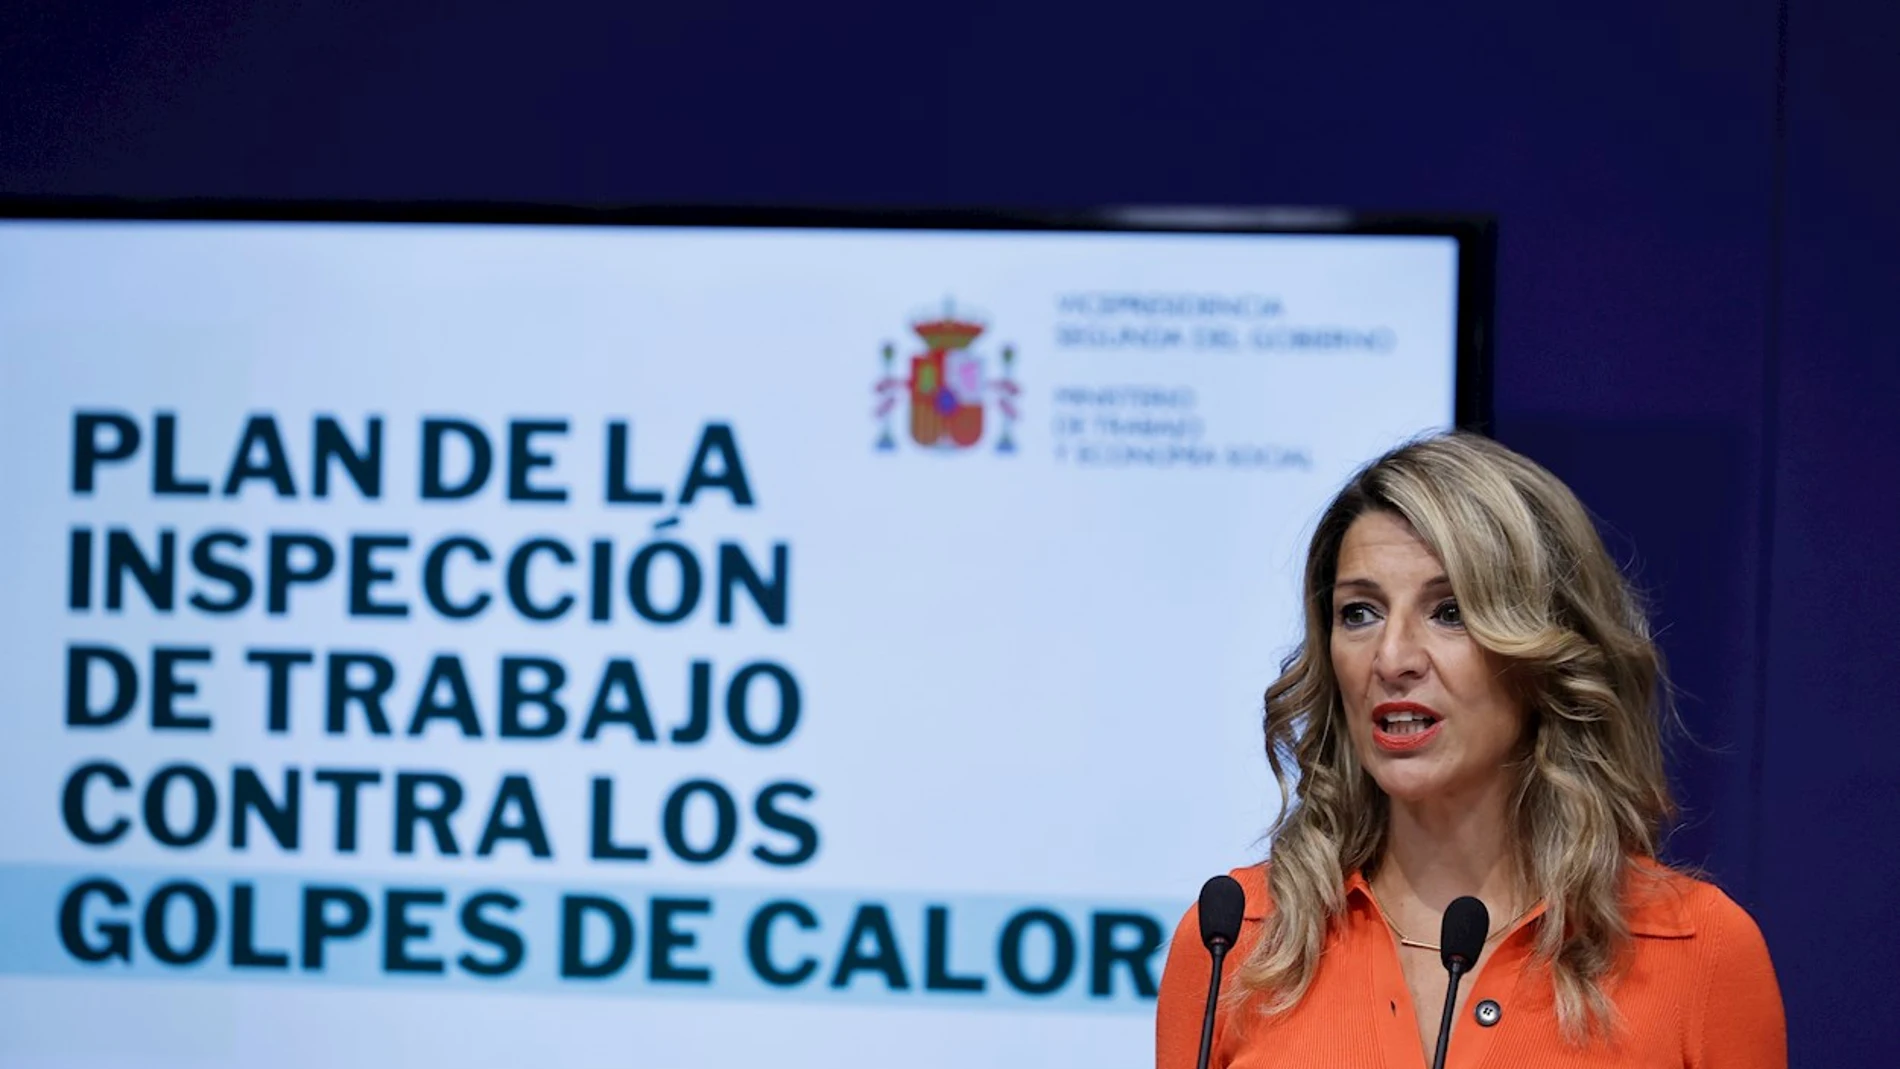 La ministra de Trabajo, Yolanda Díaz, presenta el primer plan de actuación de la Inspección de Trabajo frente al golpe de calor